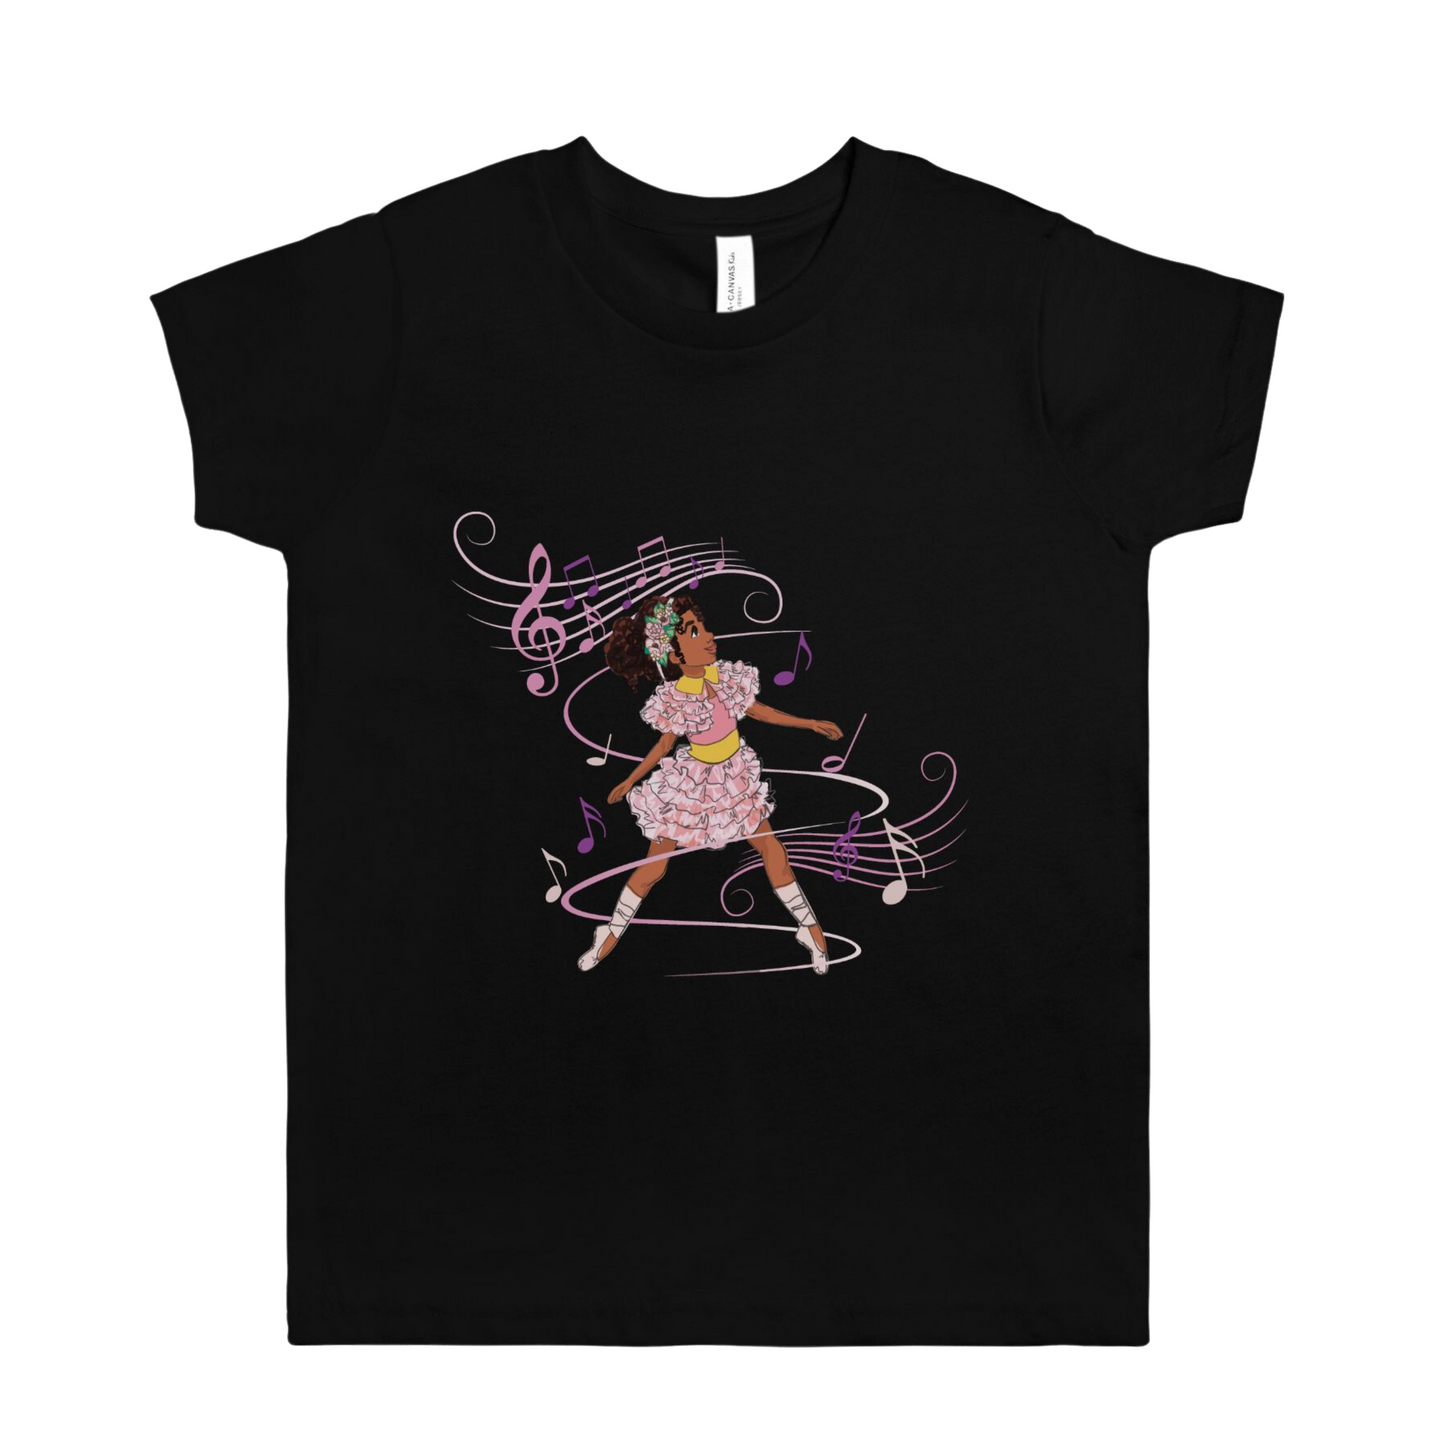 Kids Ballerina Graphic Tee Shirt